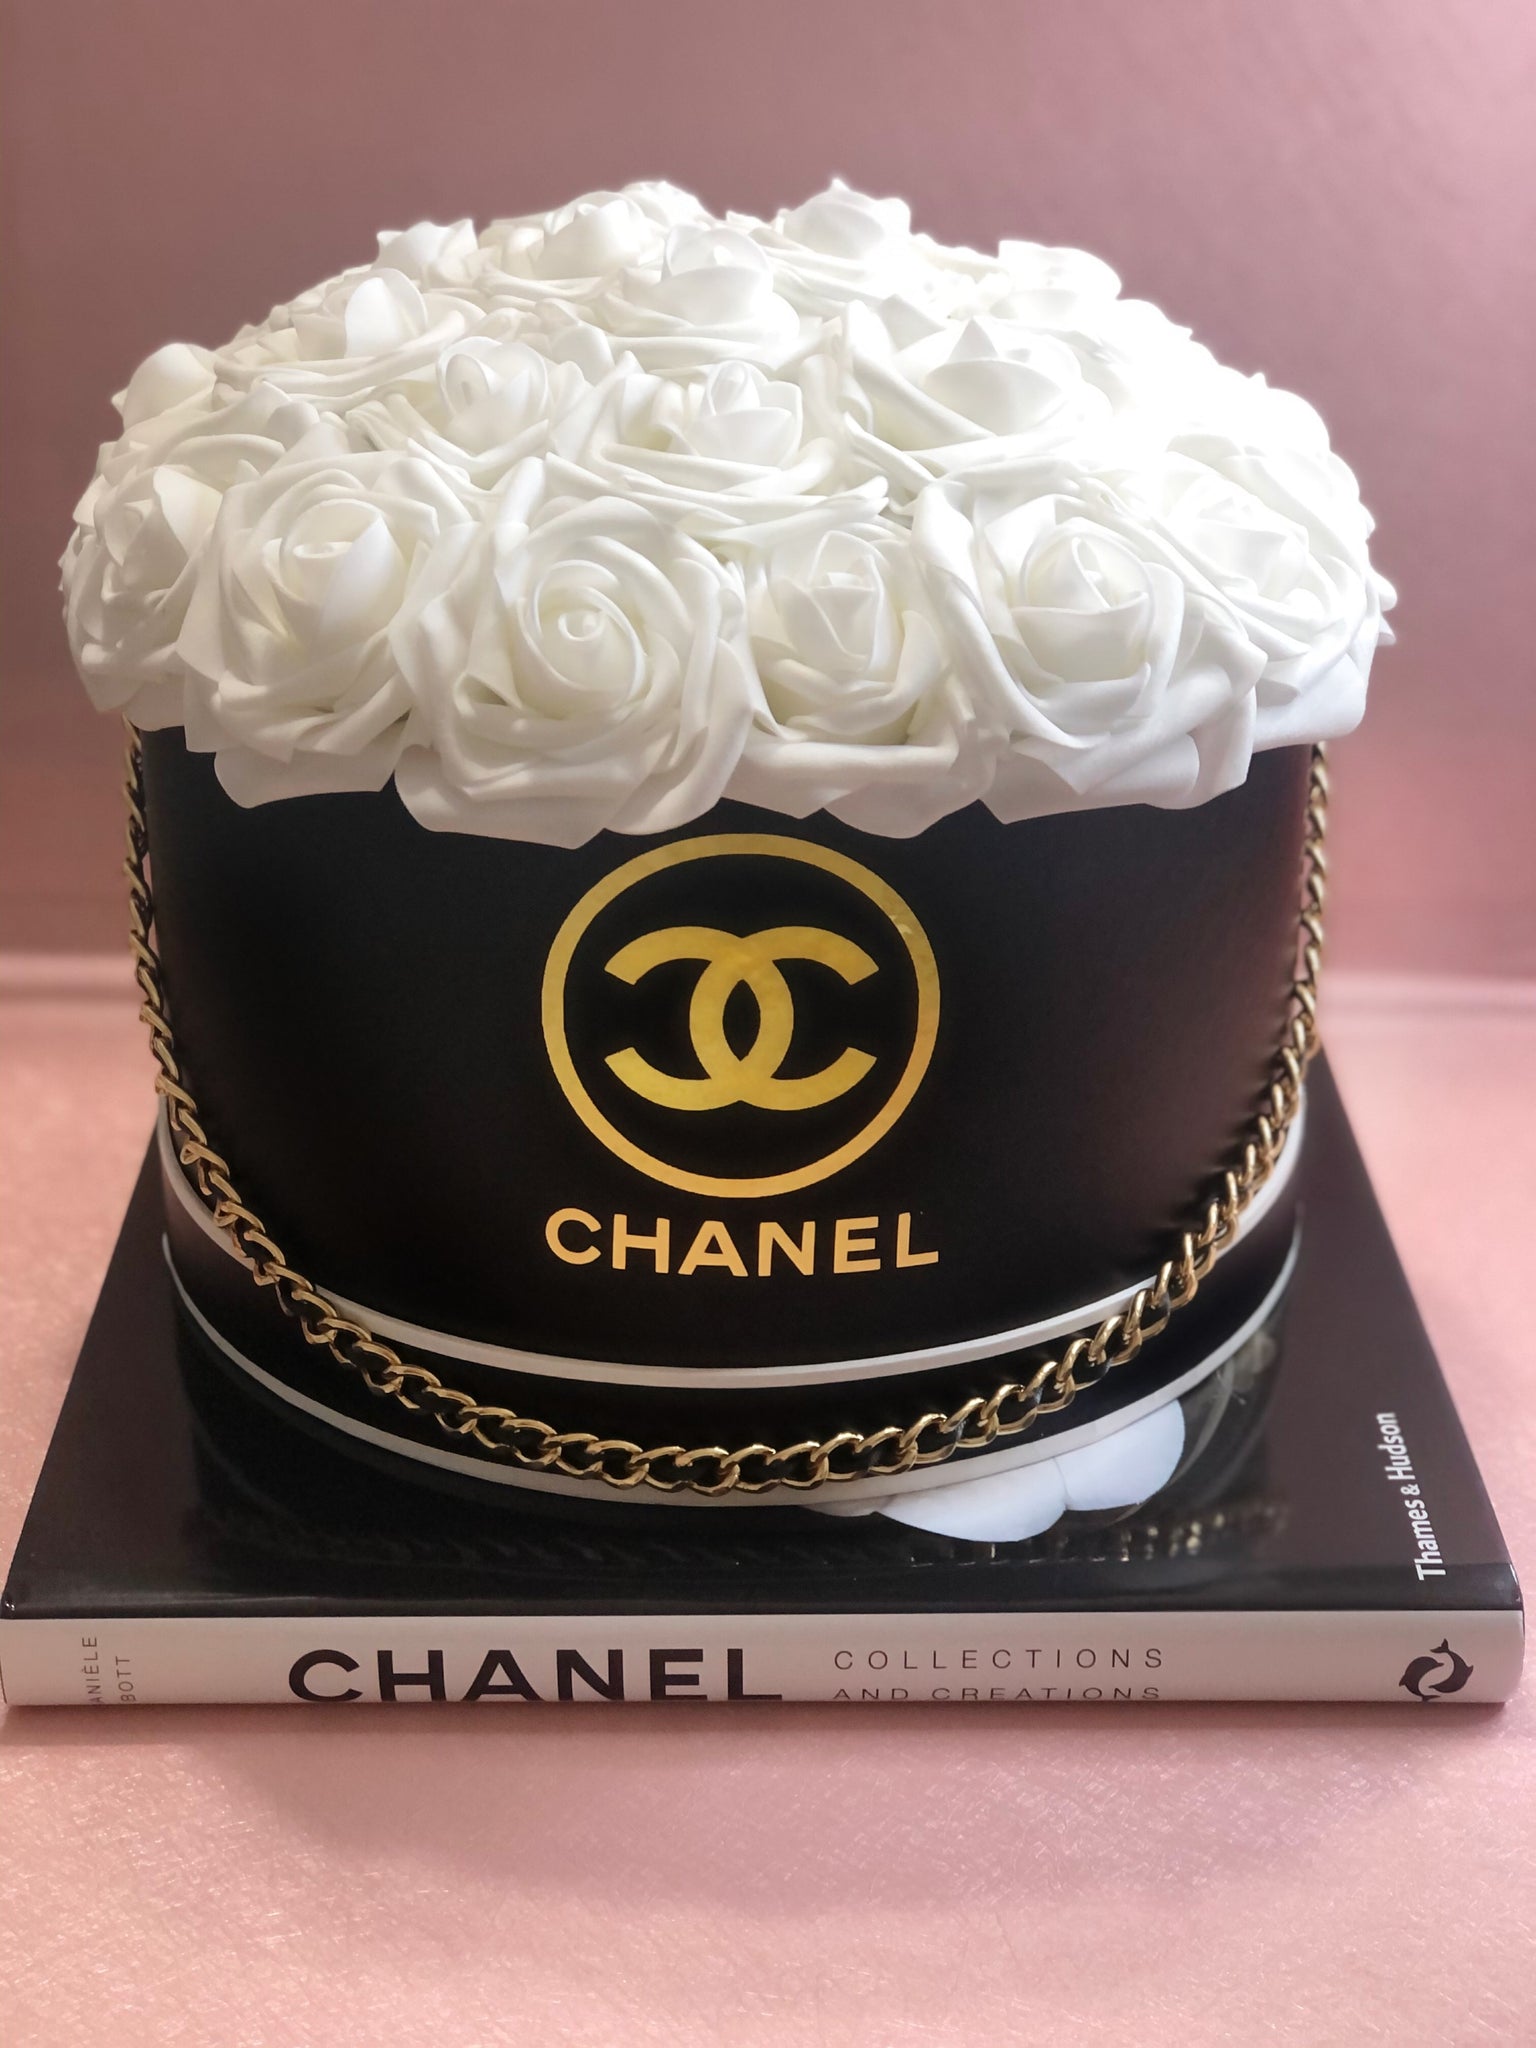 Chanel hat box cake - Decorated Cake by JCake cake - CakesDecor